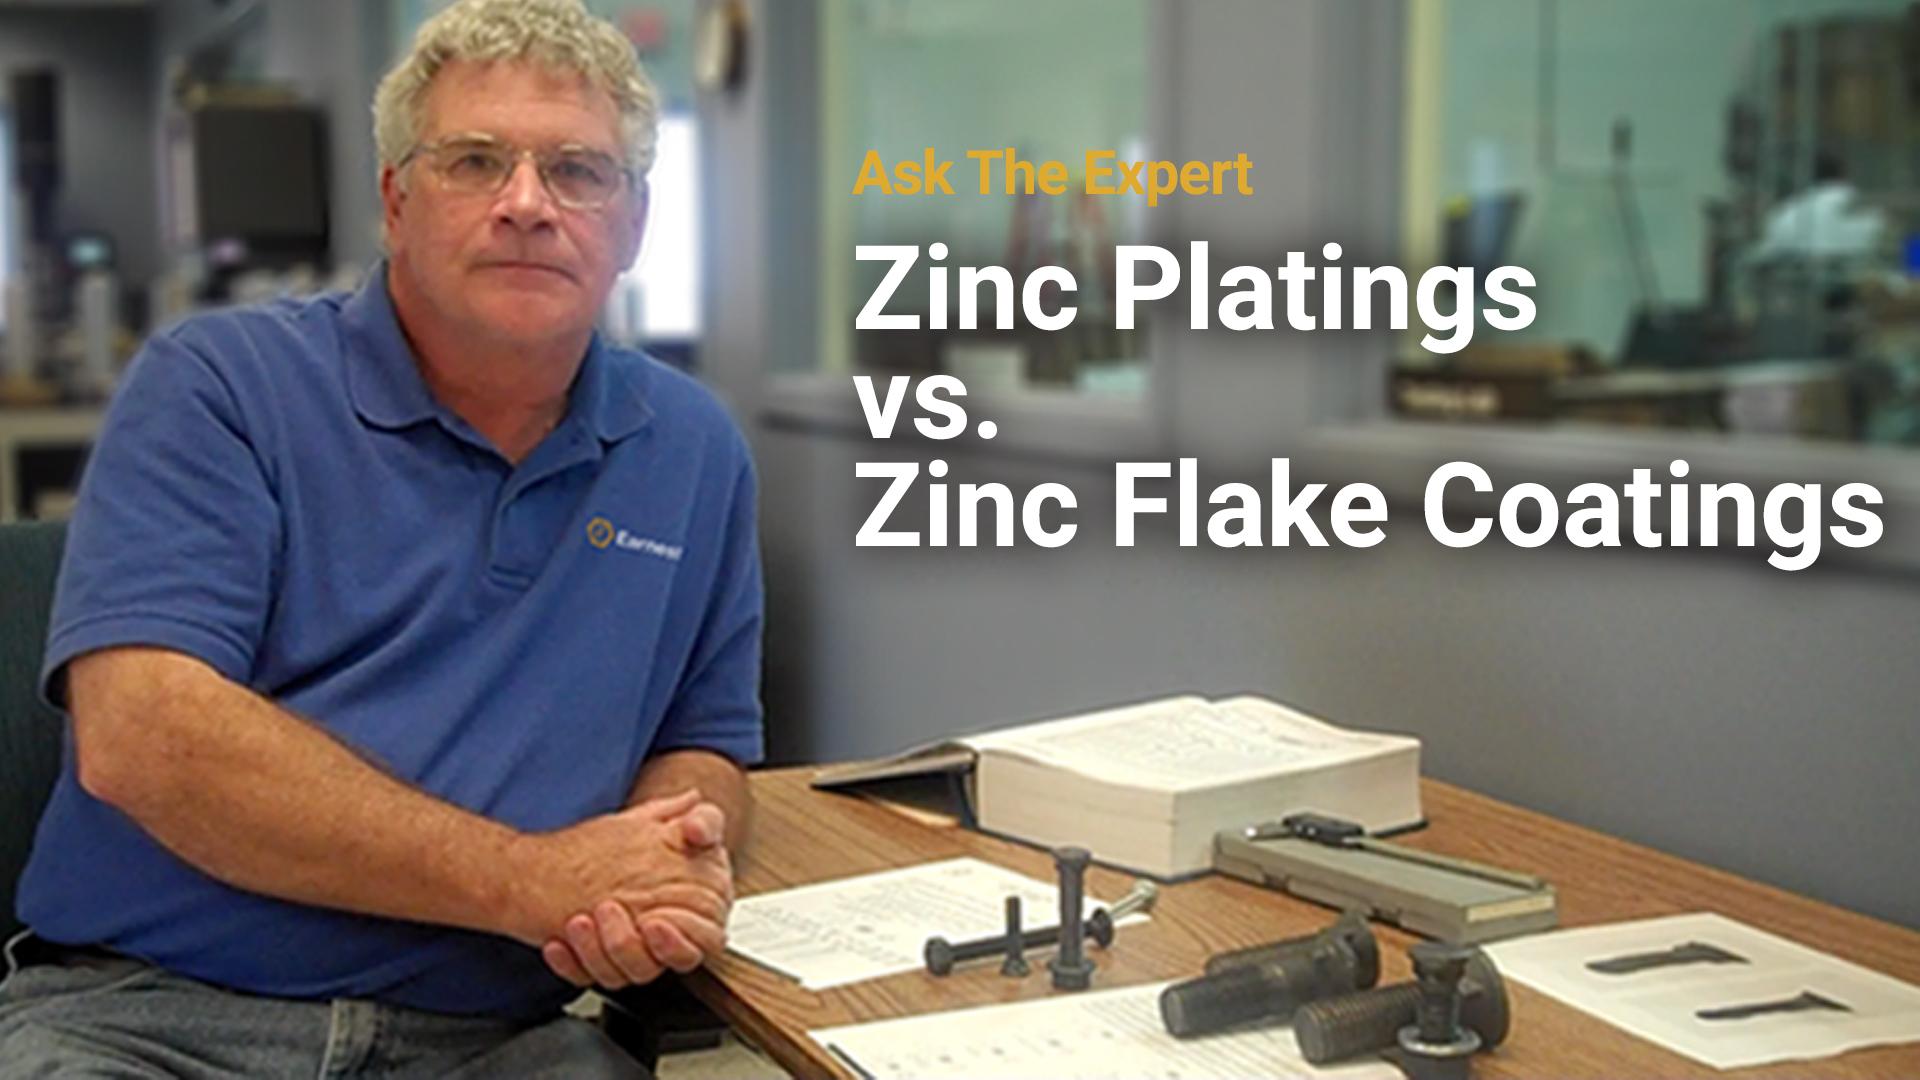 Ask the Expert: Zinc Plating vs. Zinc Flake Coating